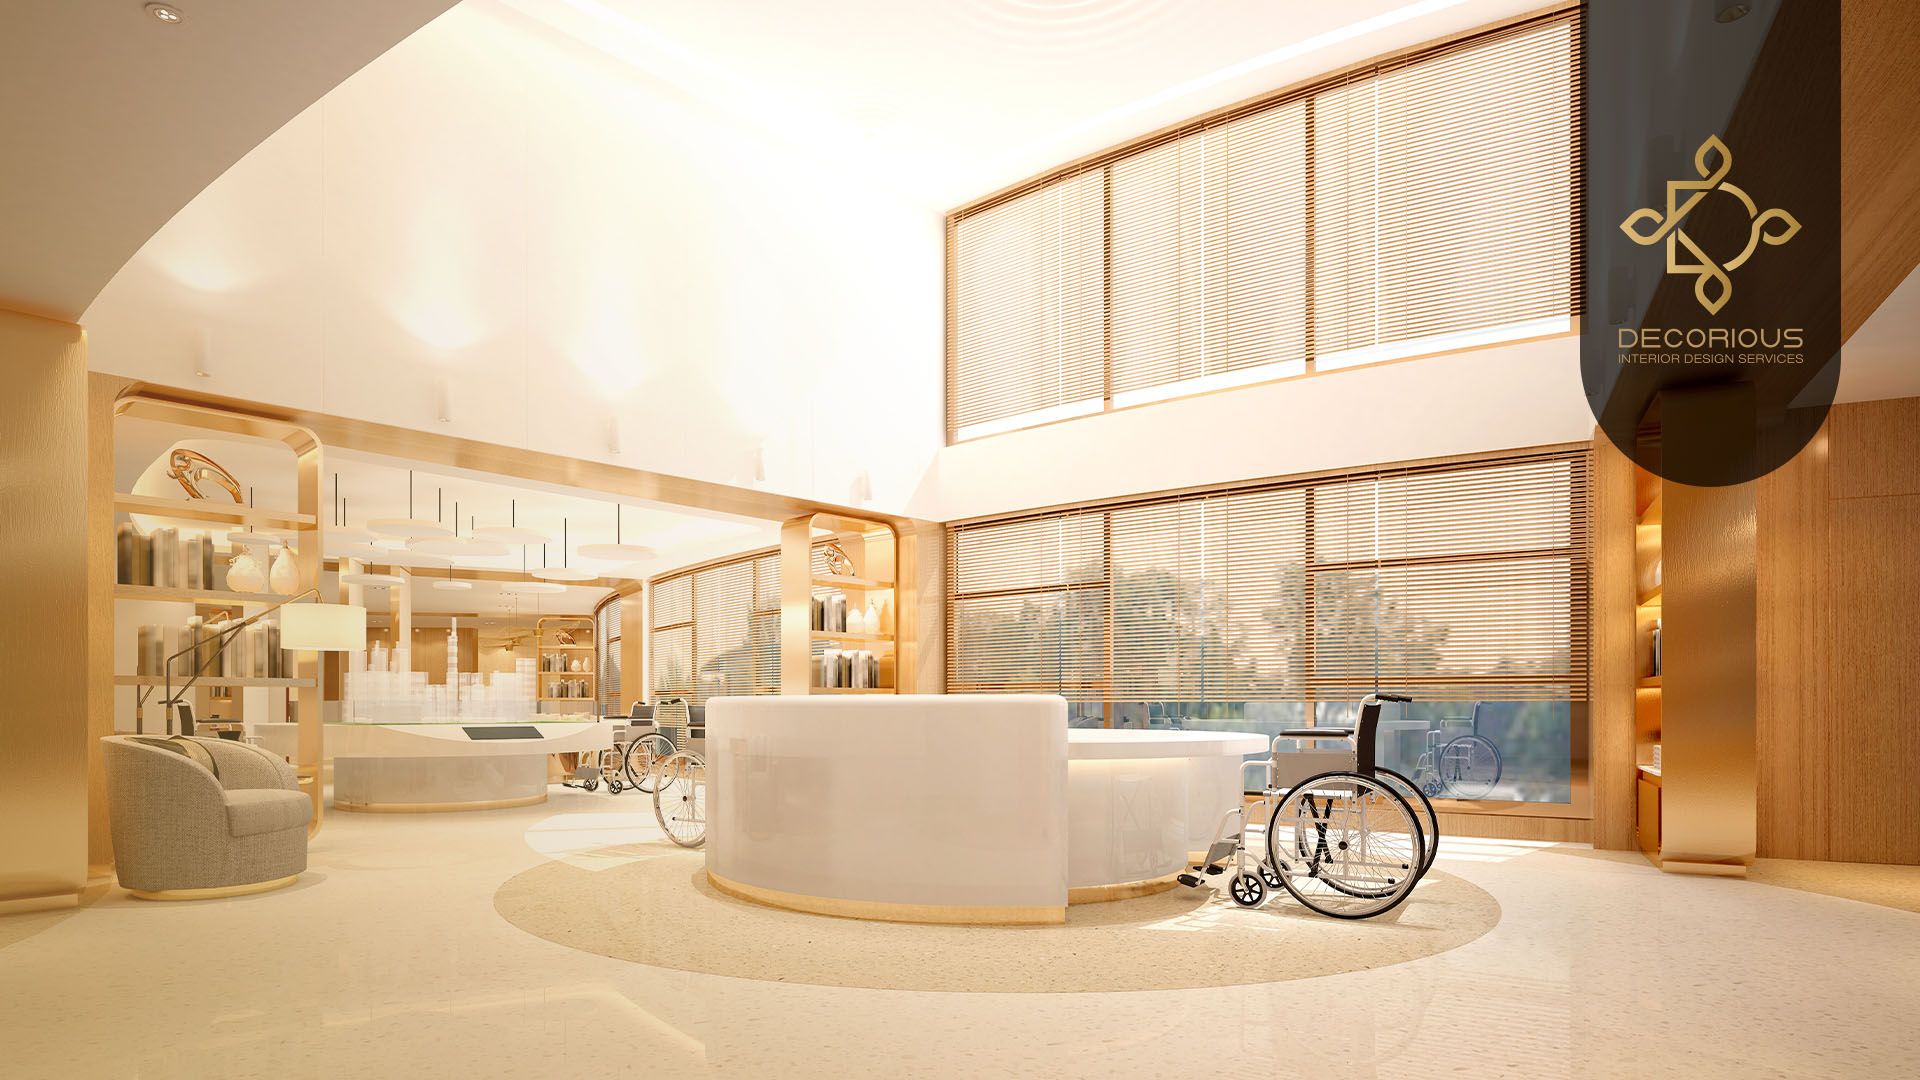 Health Facilities, why we need a decor company?